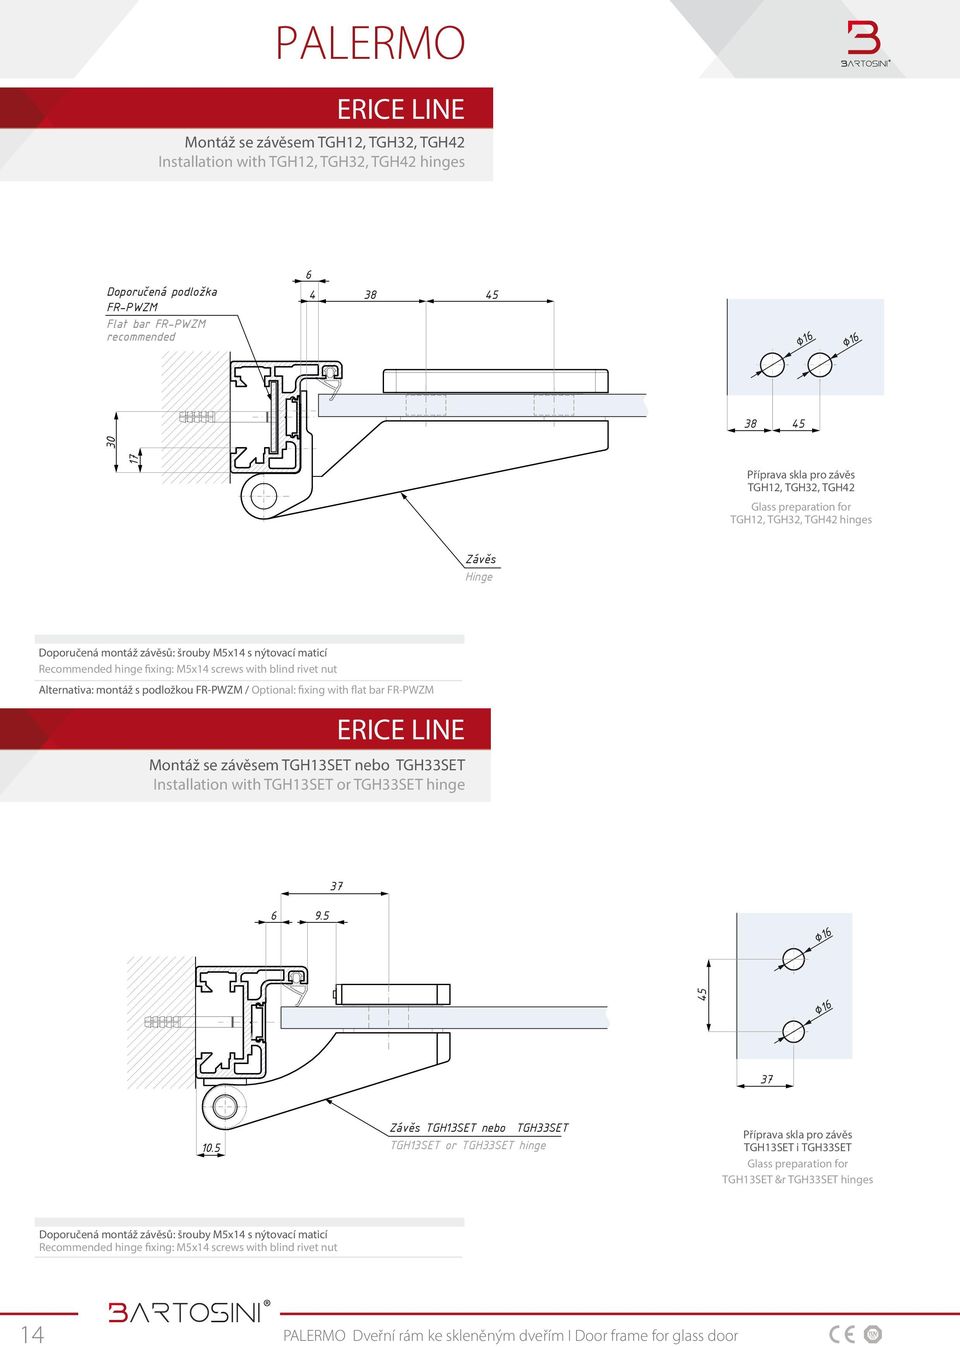 závěsů: šrouby M5x14 s nýtovací maticí Recommended hinge fixing: M5x14 screws with blind rivet nut Alternativa: montáž s podložkou FR-PWZM / Optional: fixing with flat bar FR-PWZM 37 6 9.5 37 10.